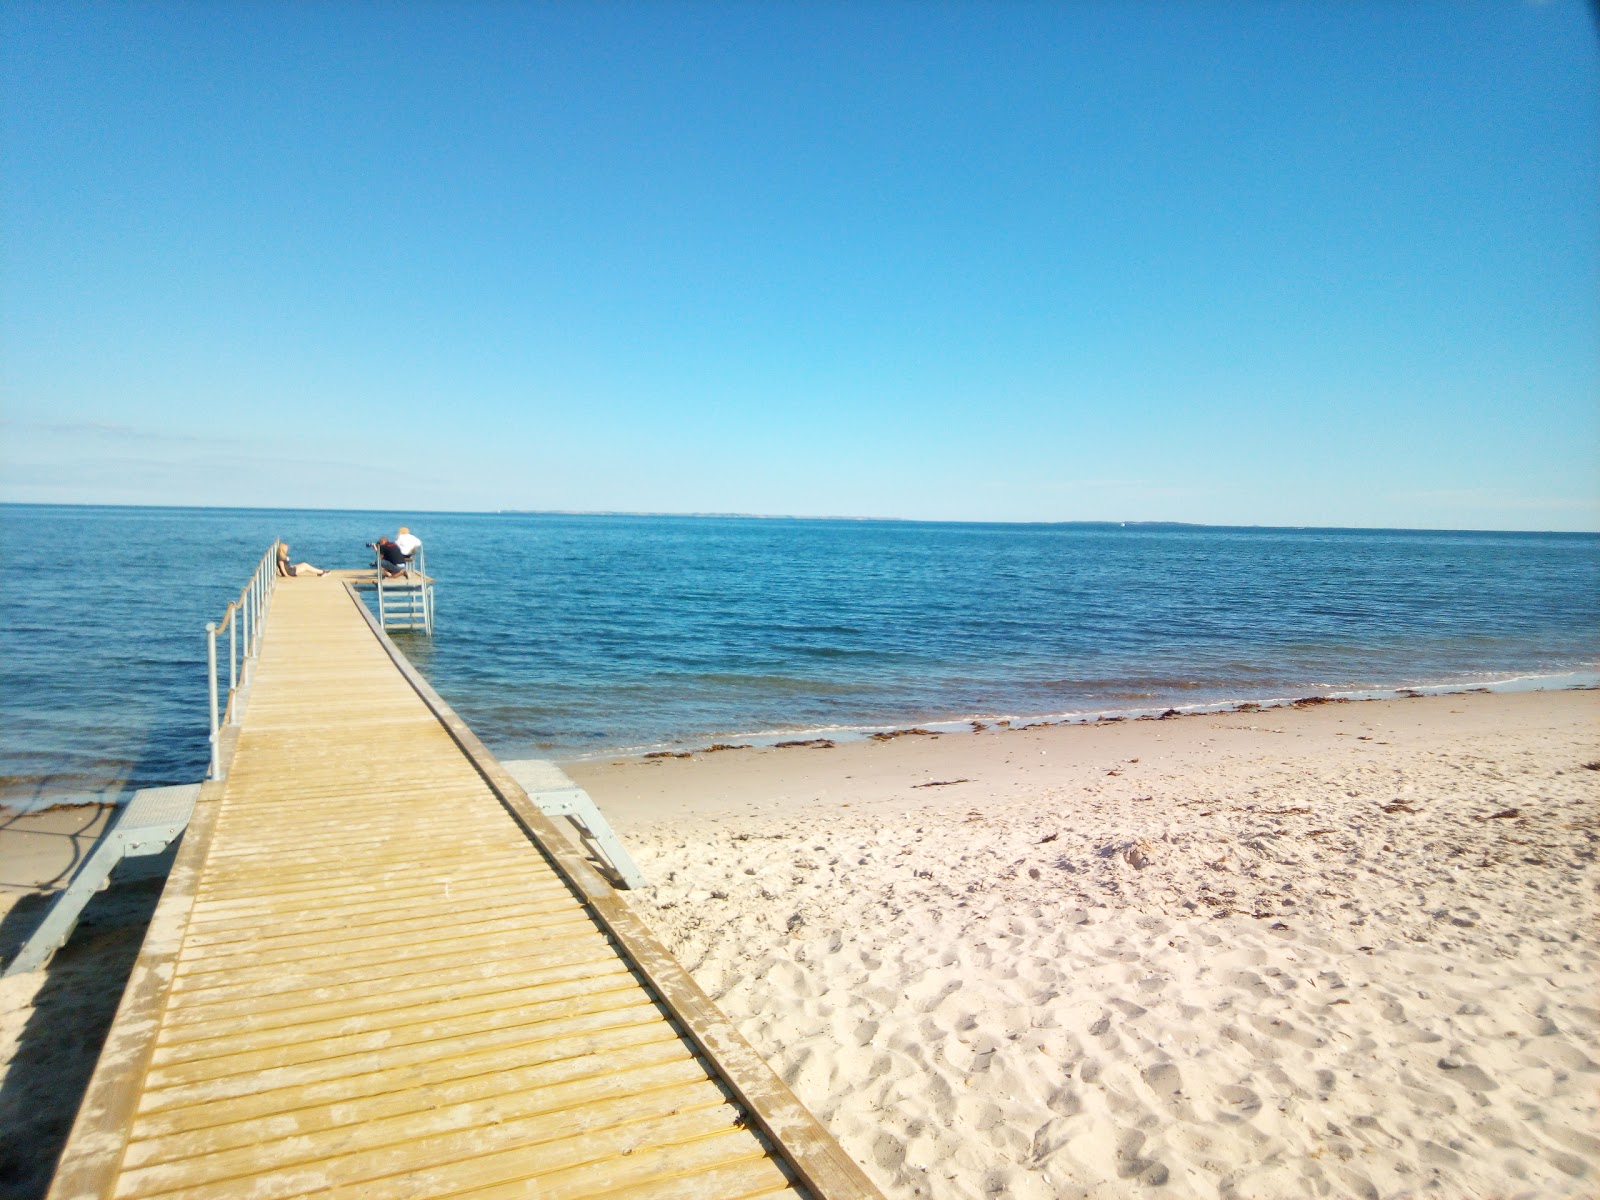 Foto de Ajstrup Beach - lugar popular entre os apreciadores de relaxamento